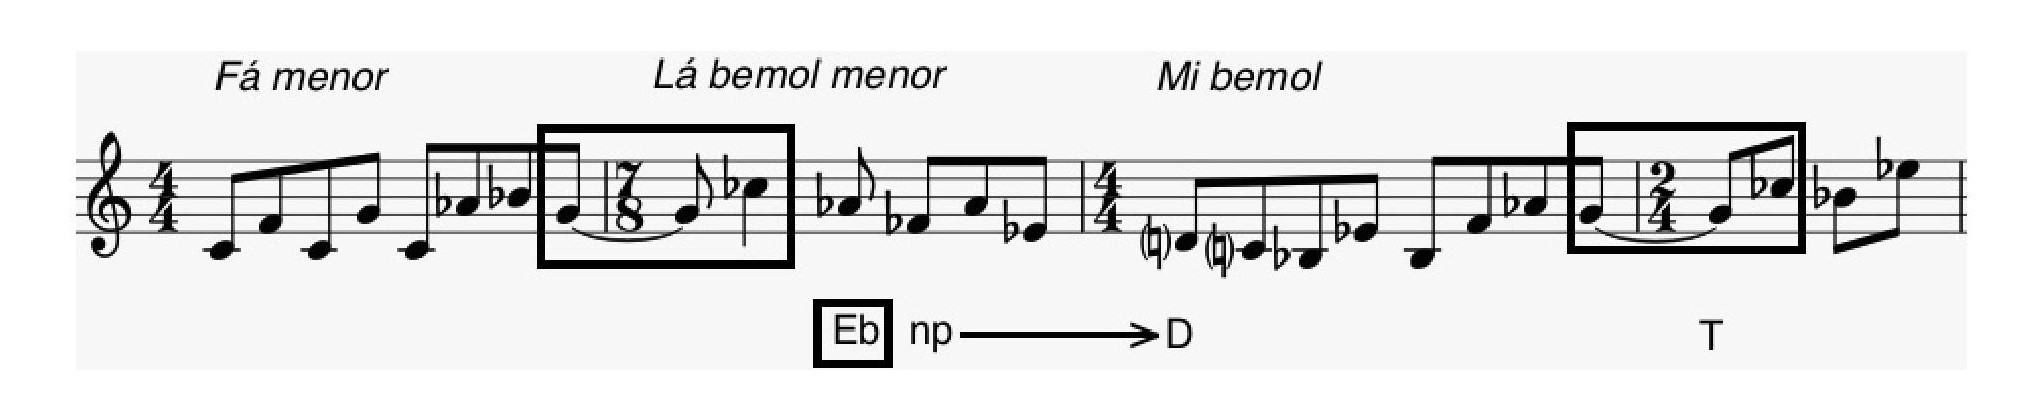 Fig. 16: Esboço dos c. 5-8, com as versões enarmonizadas do motivo sol-si assinaladas e com indicação das Tonarten 

sugeridas a cada momento.